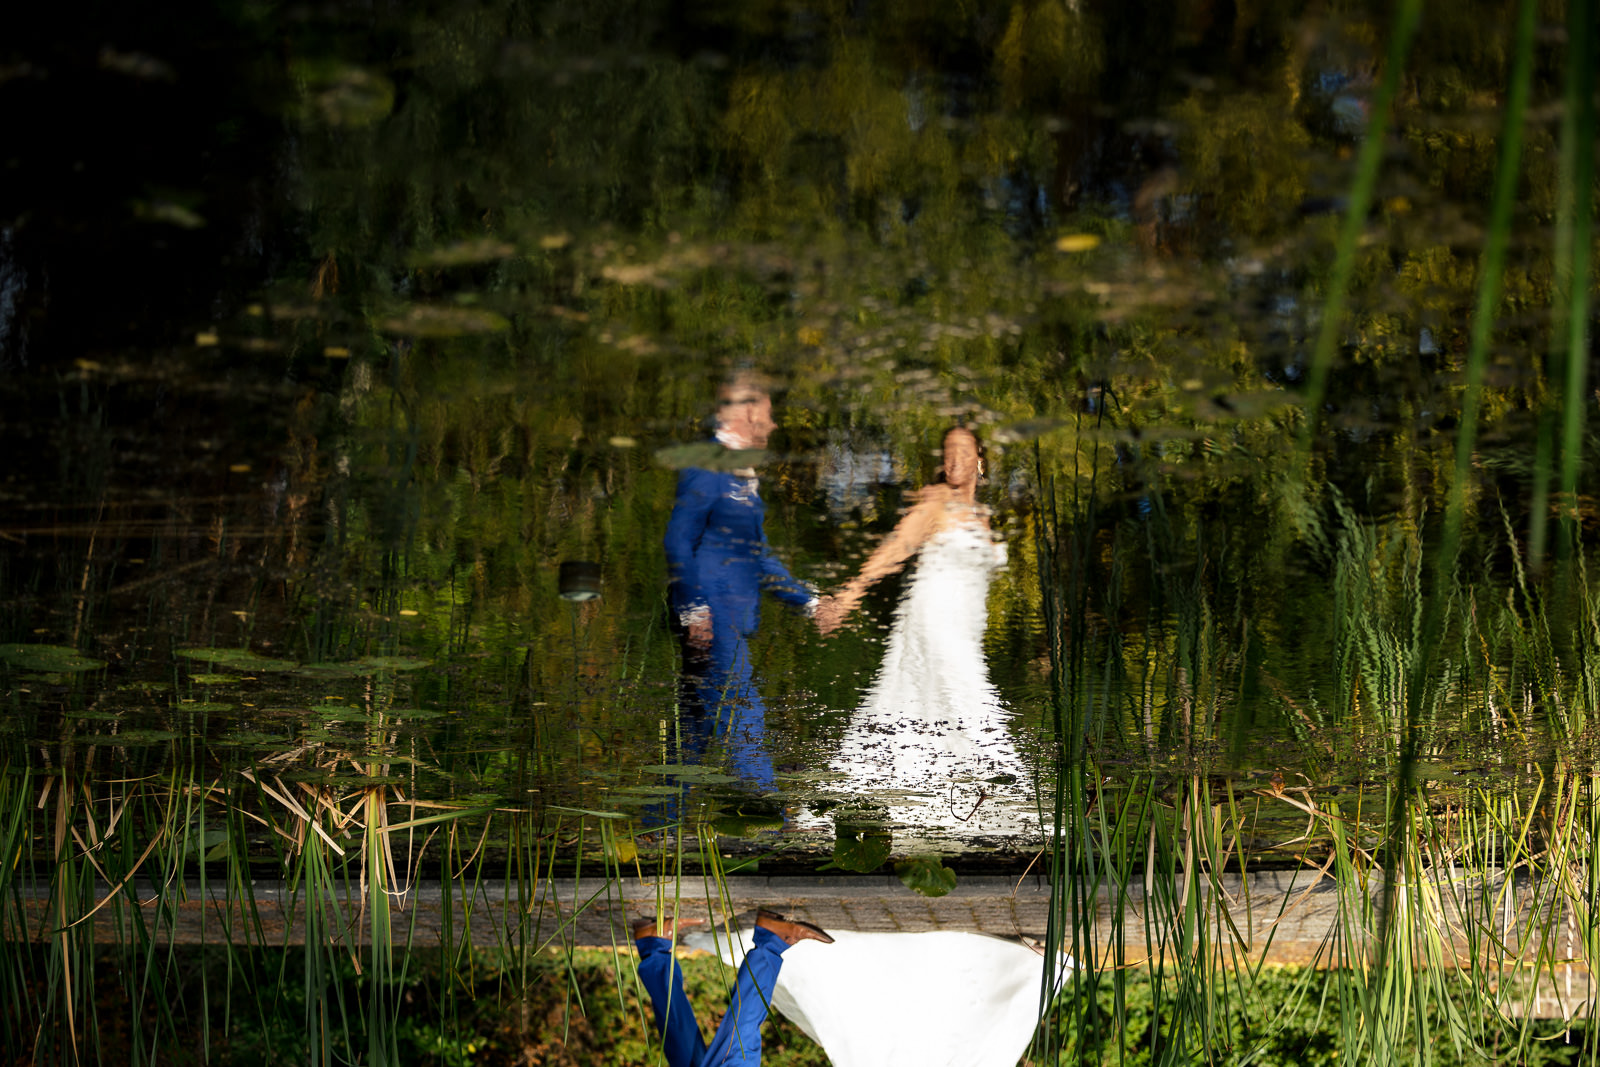 Trouwfotograaf Westland trouw fotoshoot bij De Zwetburch weerspiegeling in het water